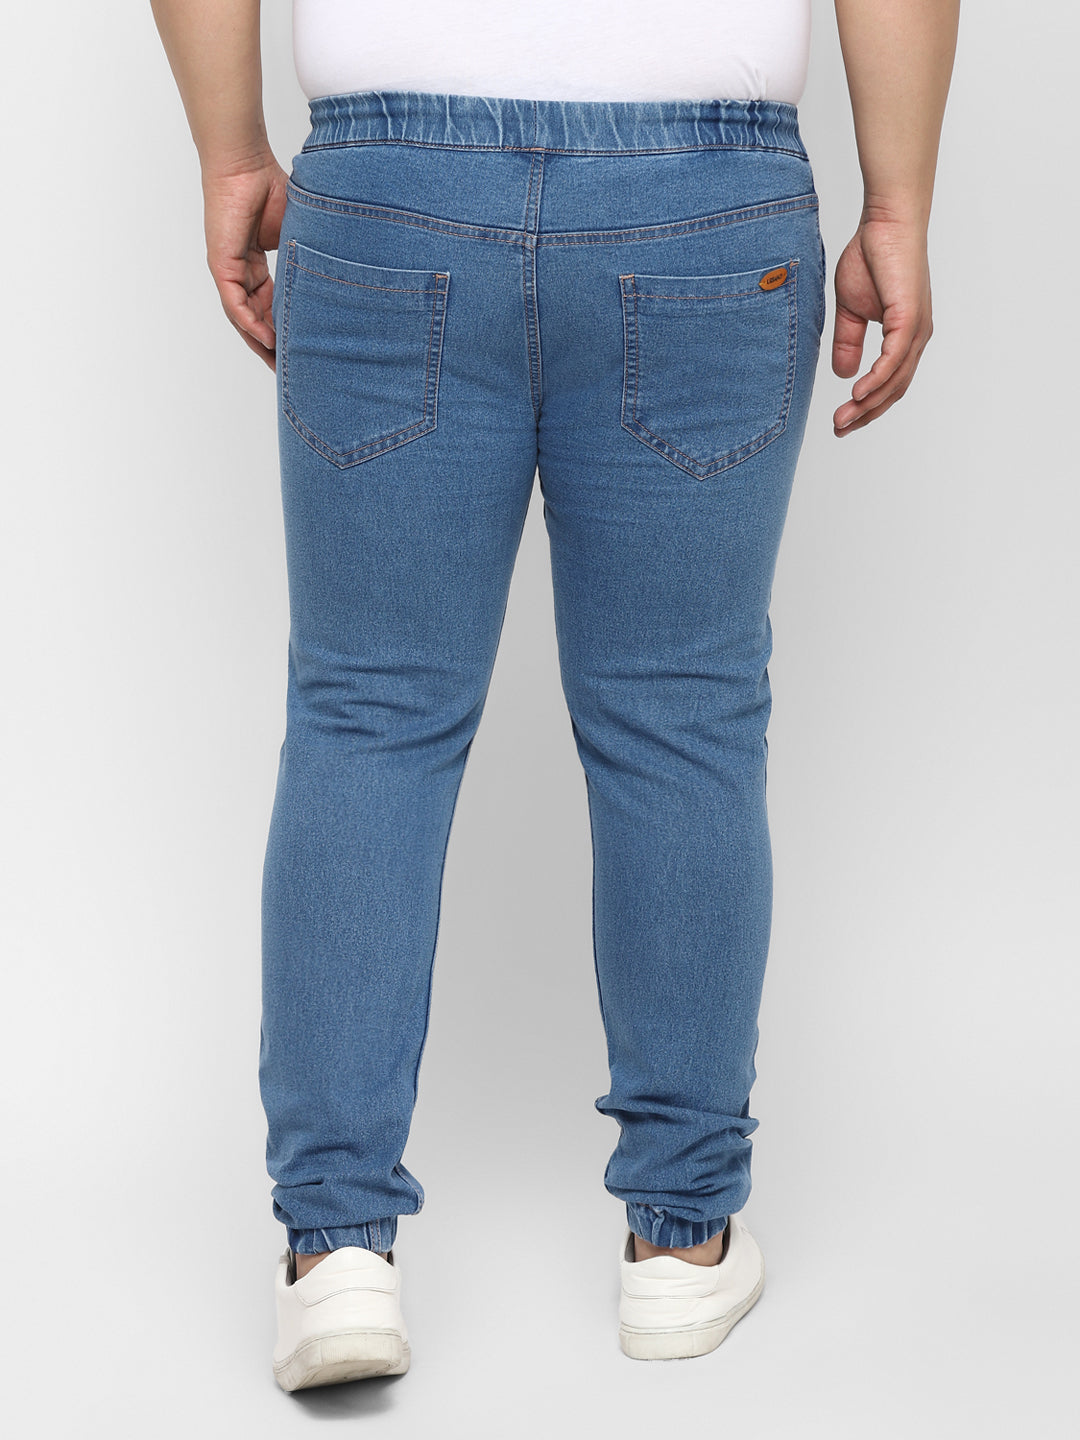 Plus Men's Light Blue Regular Fit Washed Jogger Jeans Stretchable